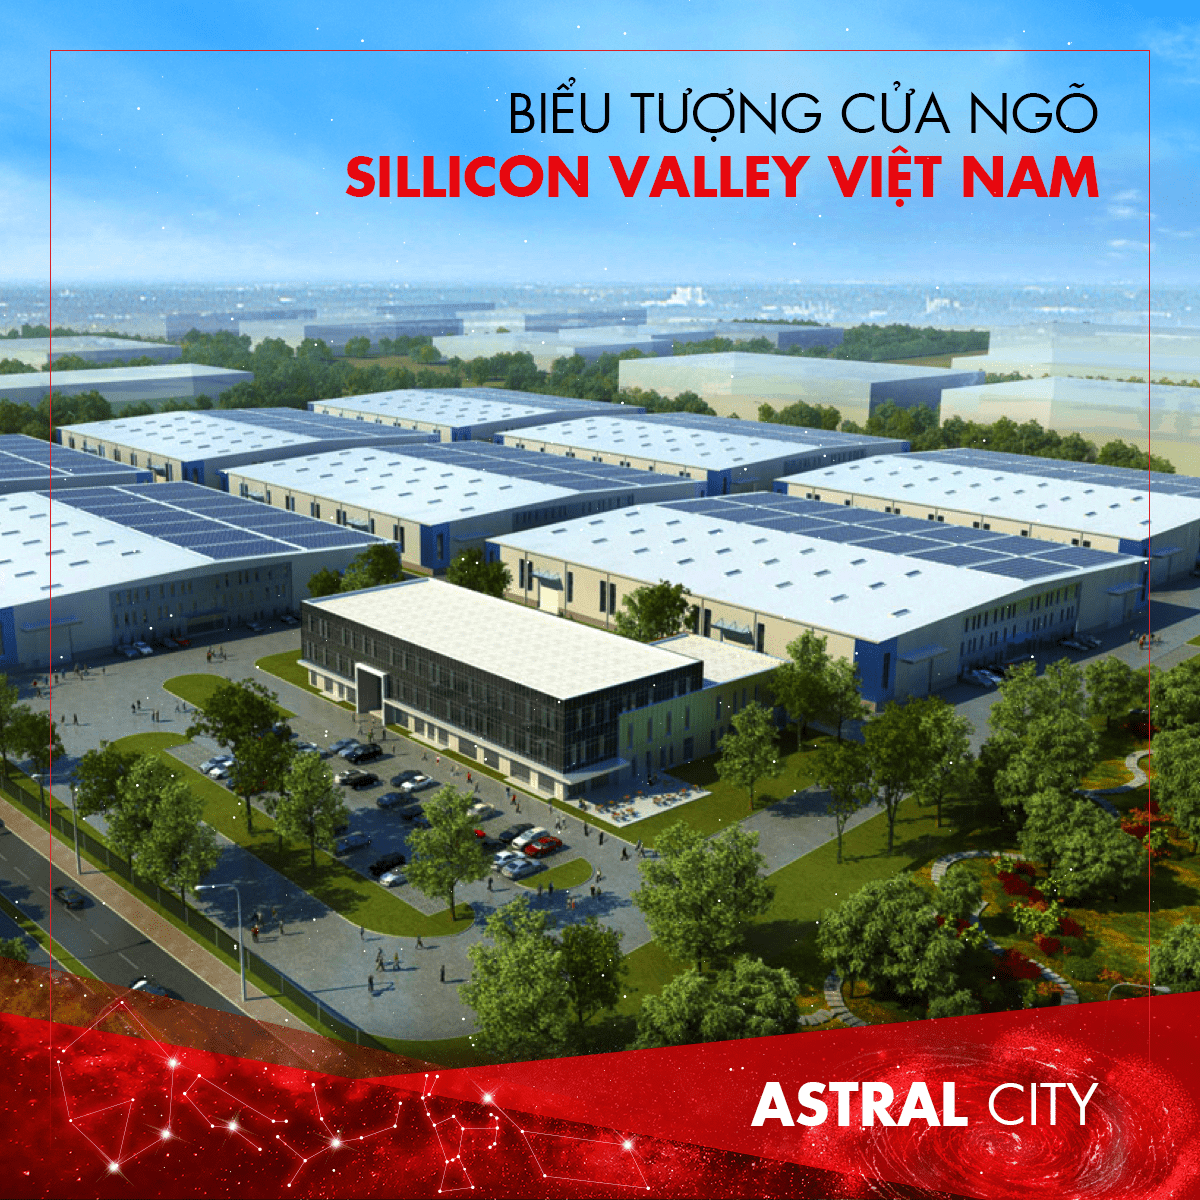 Biểu tượng cửa ngõ Silicon Valley Việt Nam